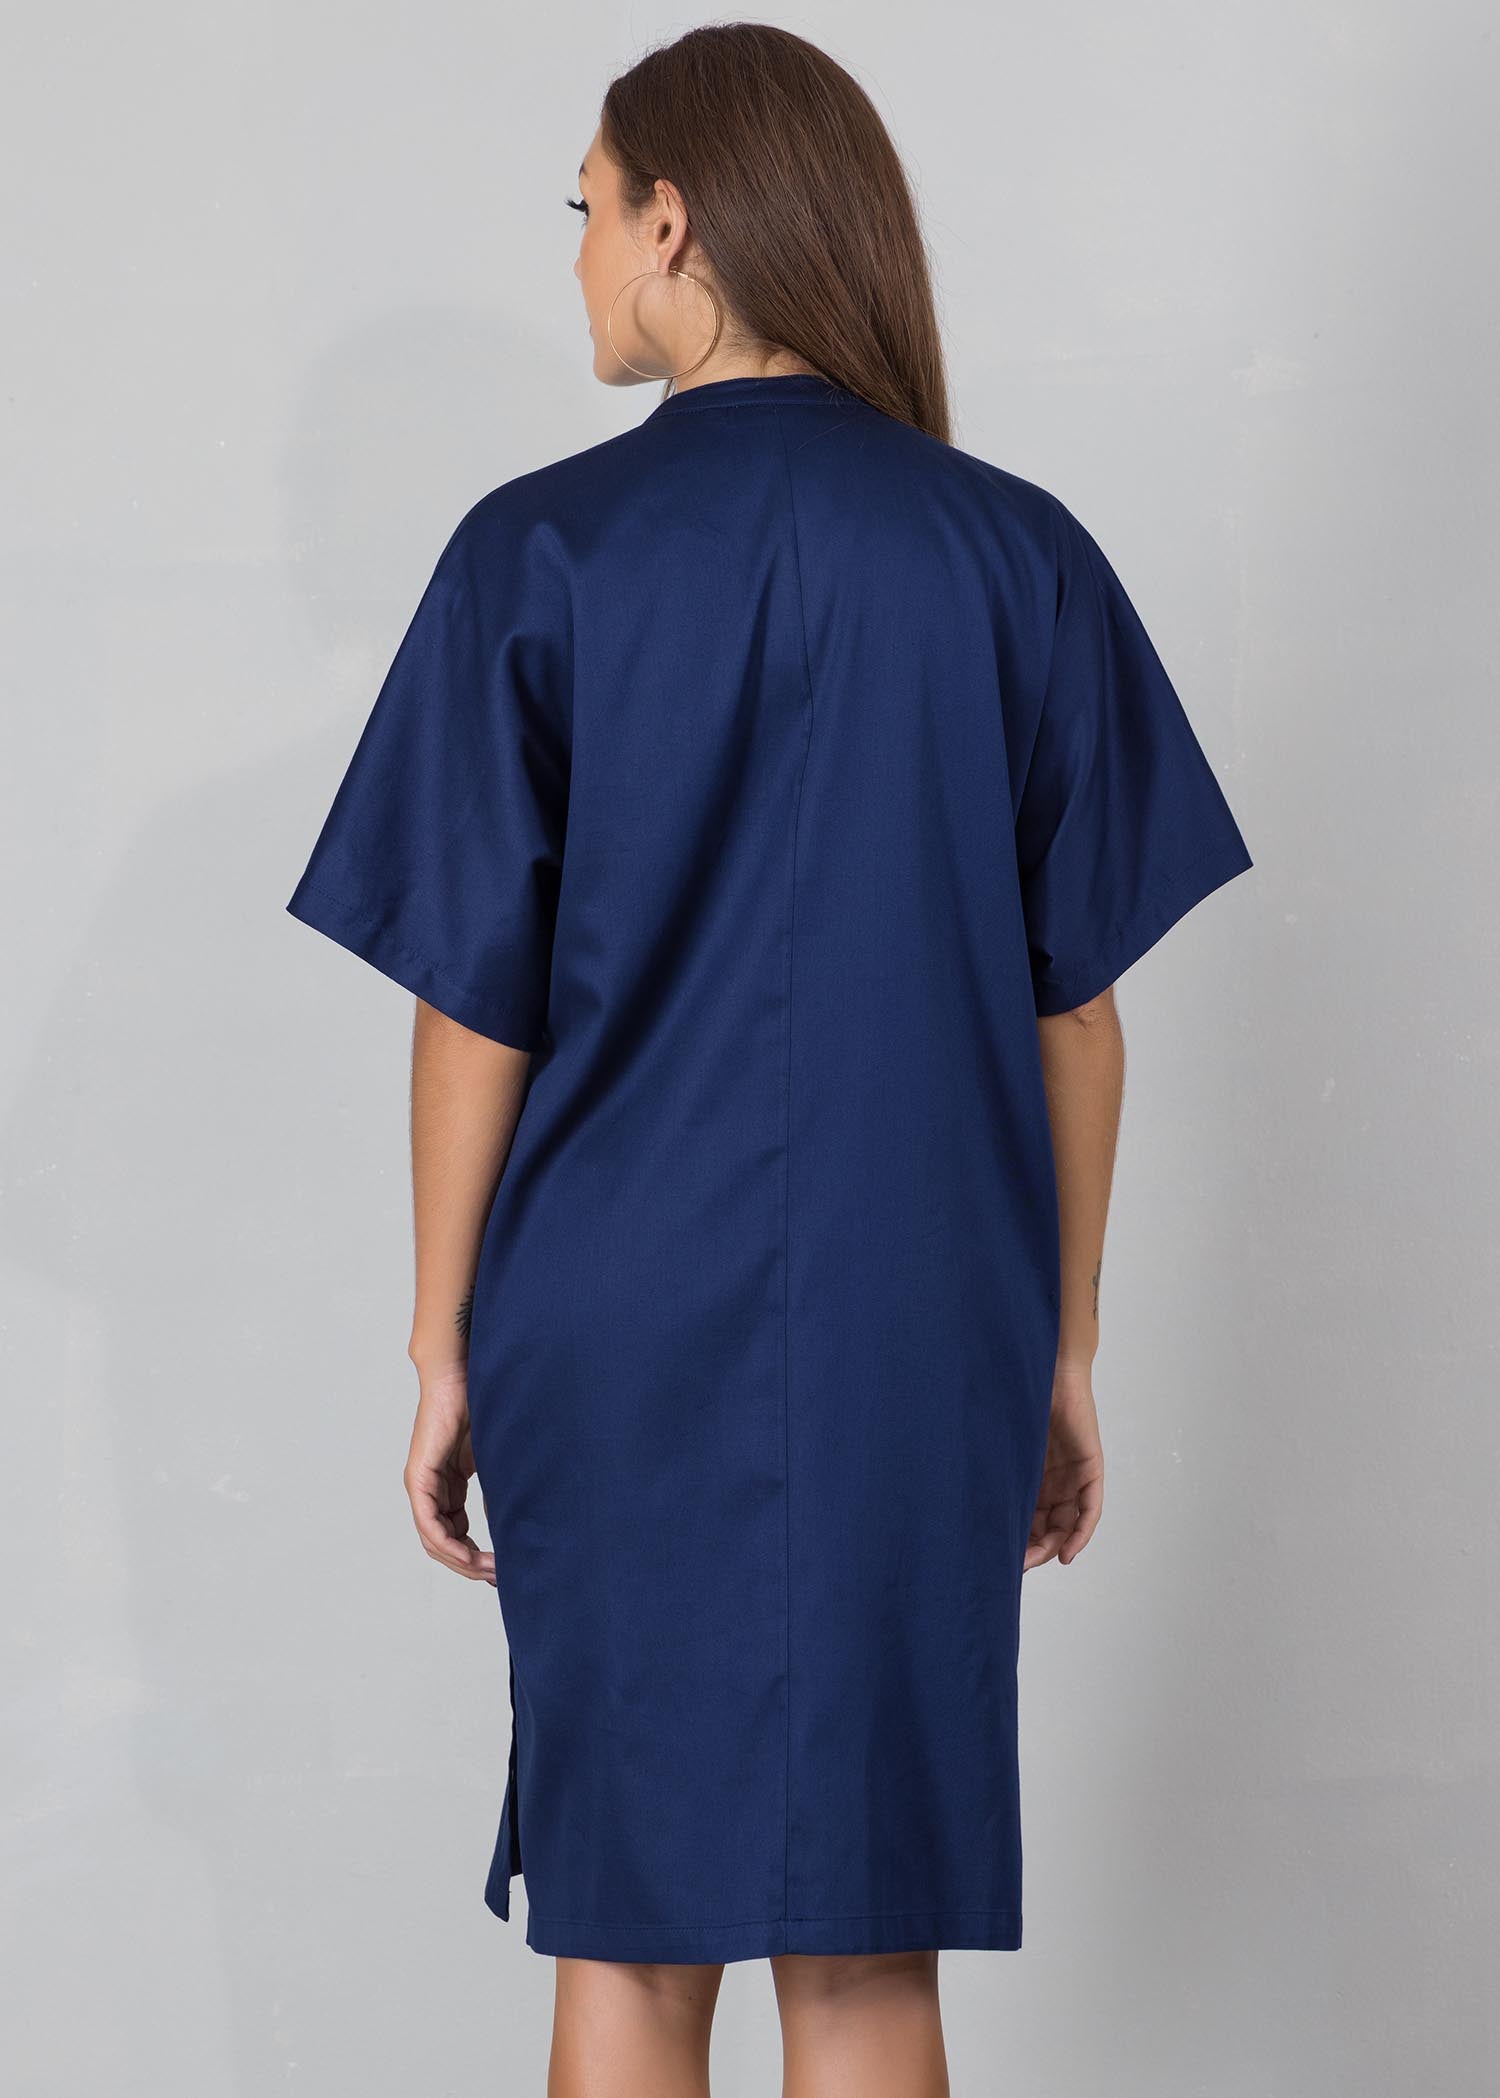 Drop shoulder dress with velt pockets